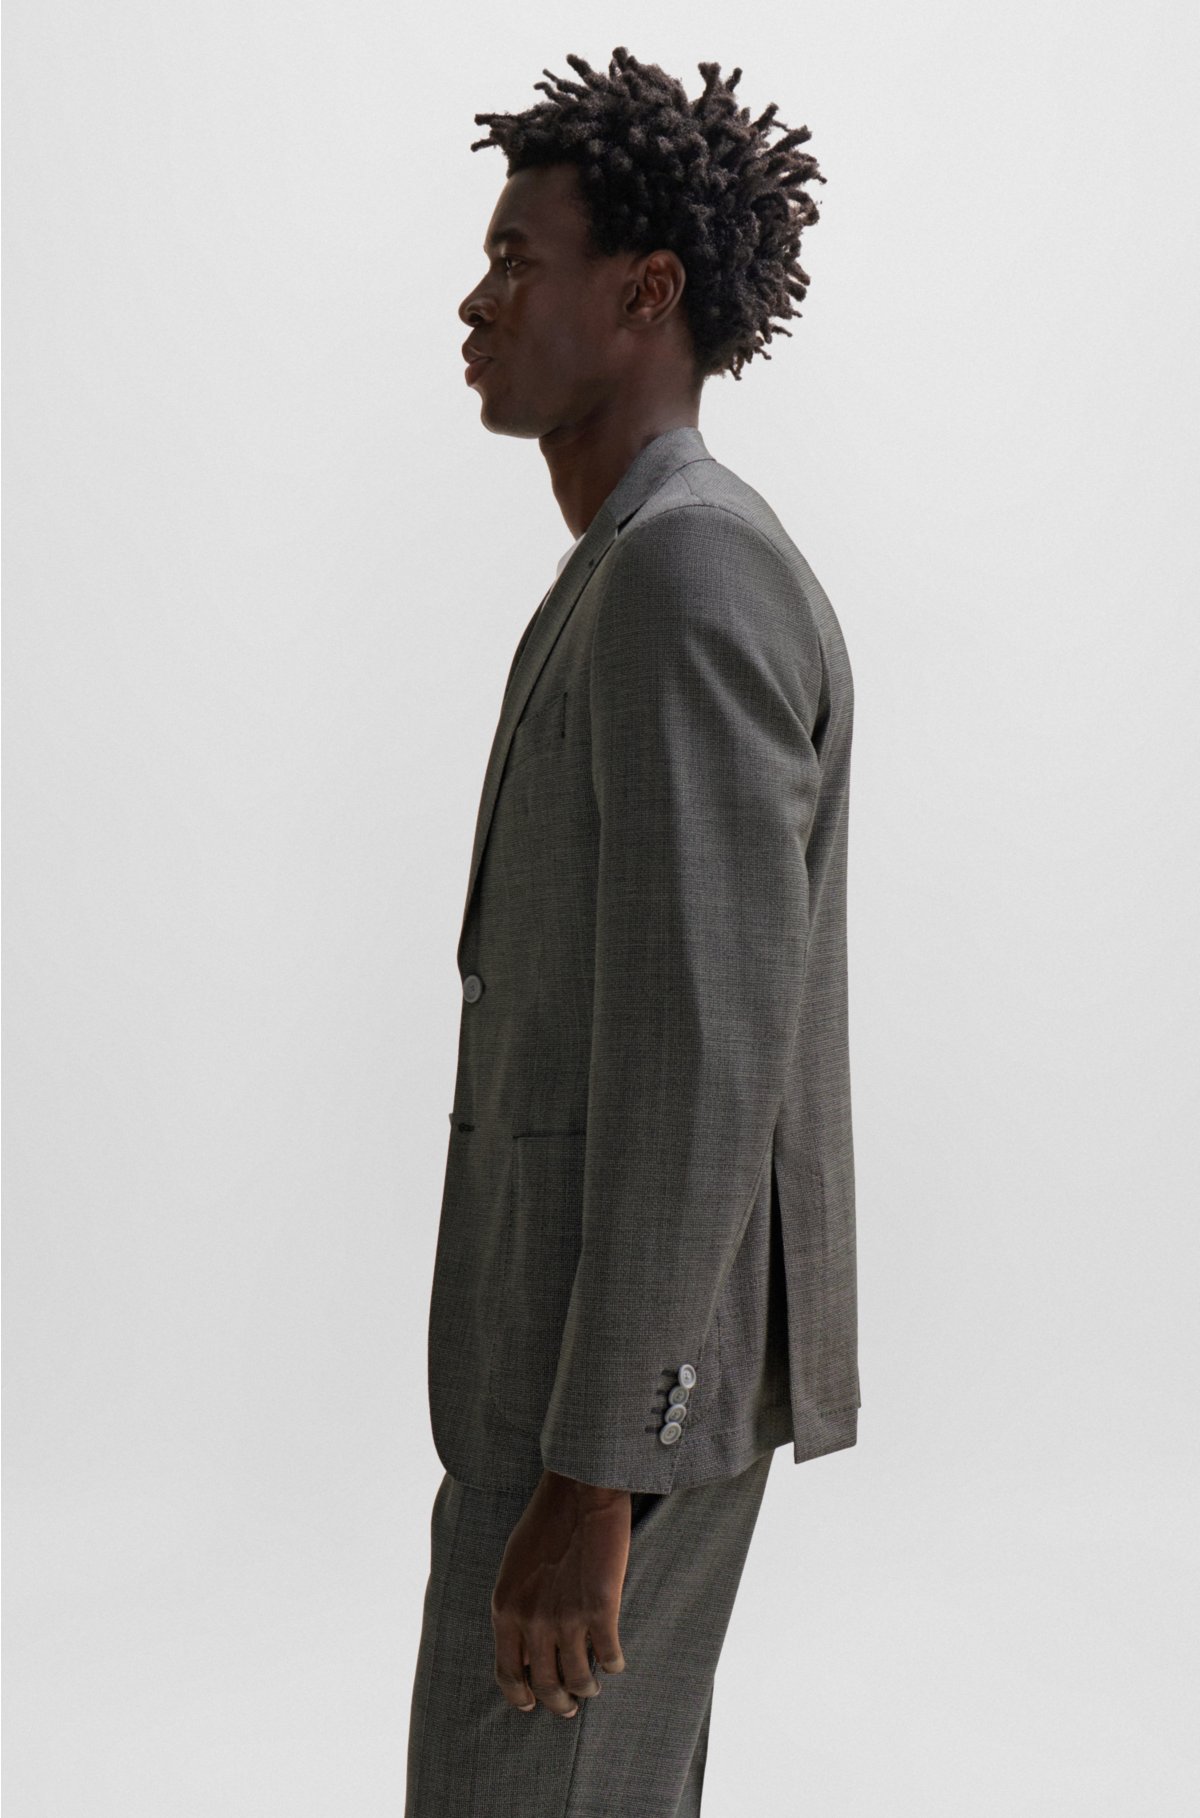 BOSS - Slim-fit suit in micro-patterned virgin wool